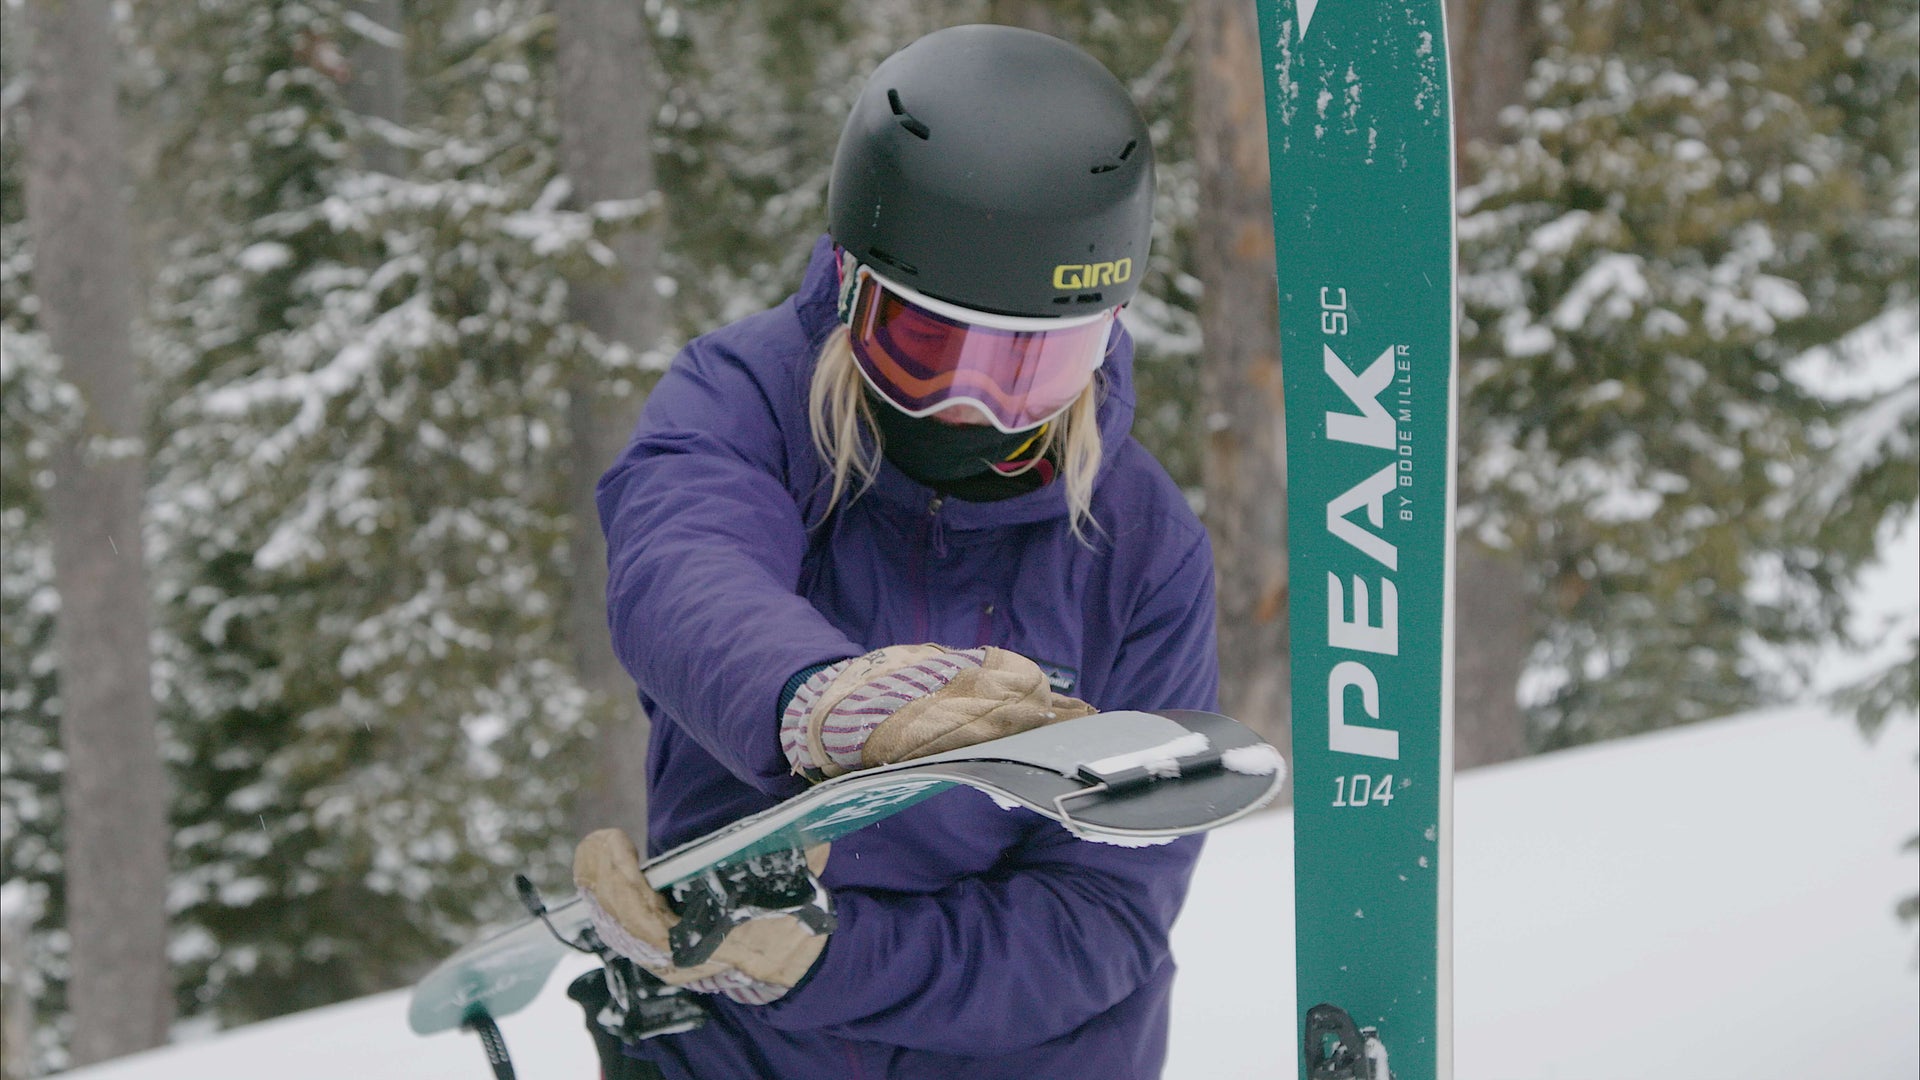 A women skier fixing skins onto skis